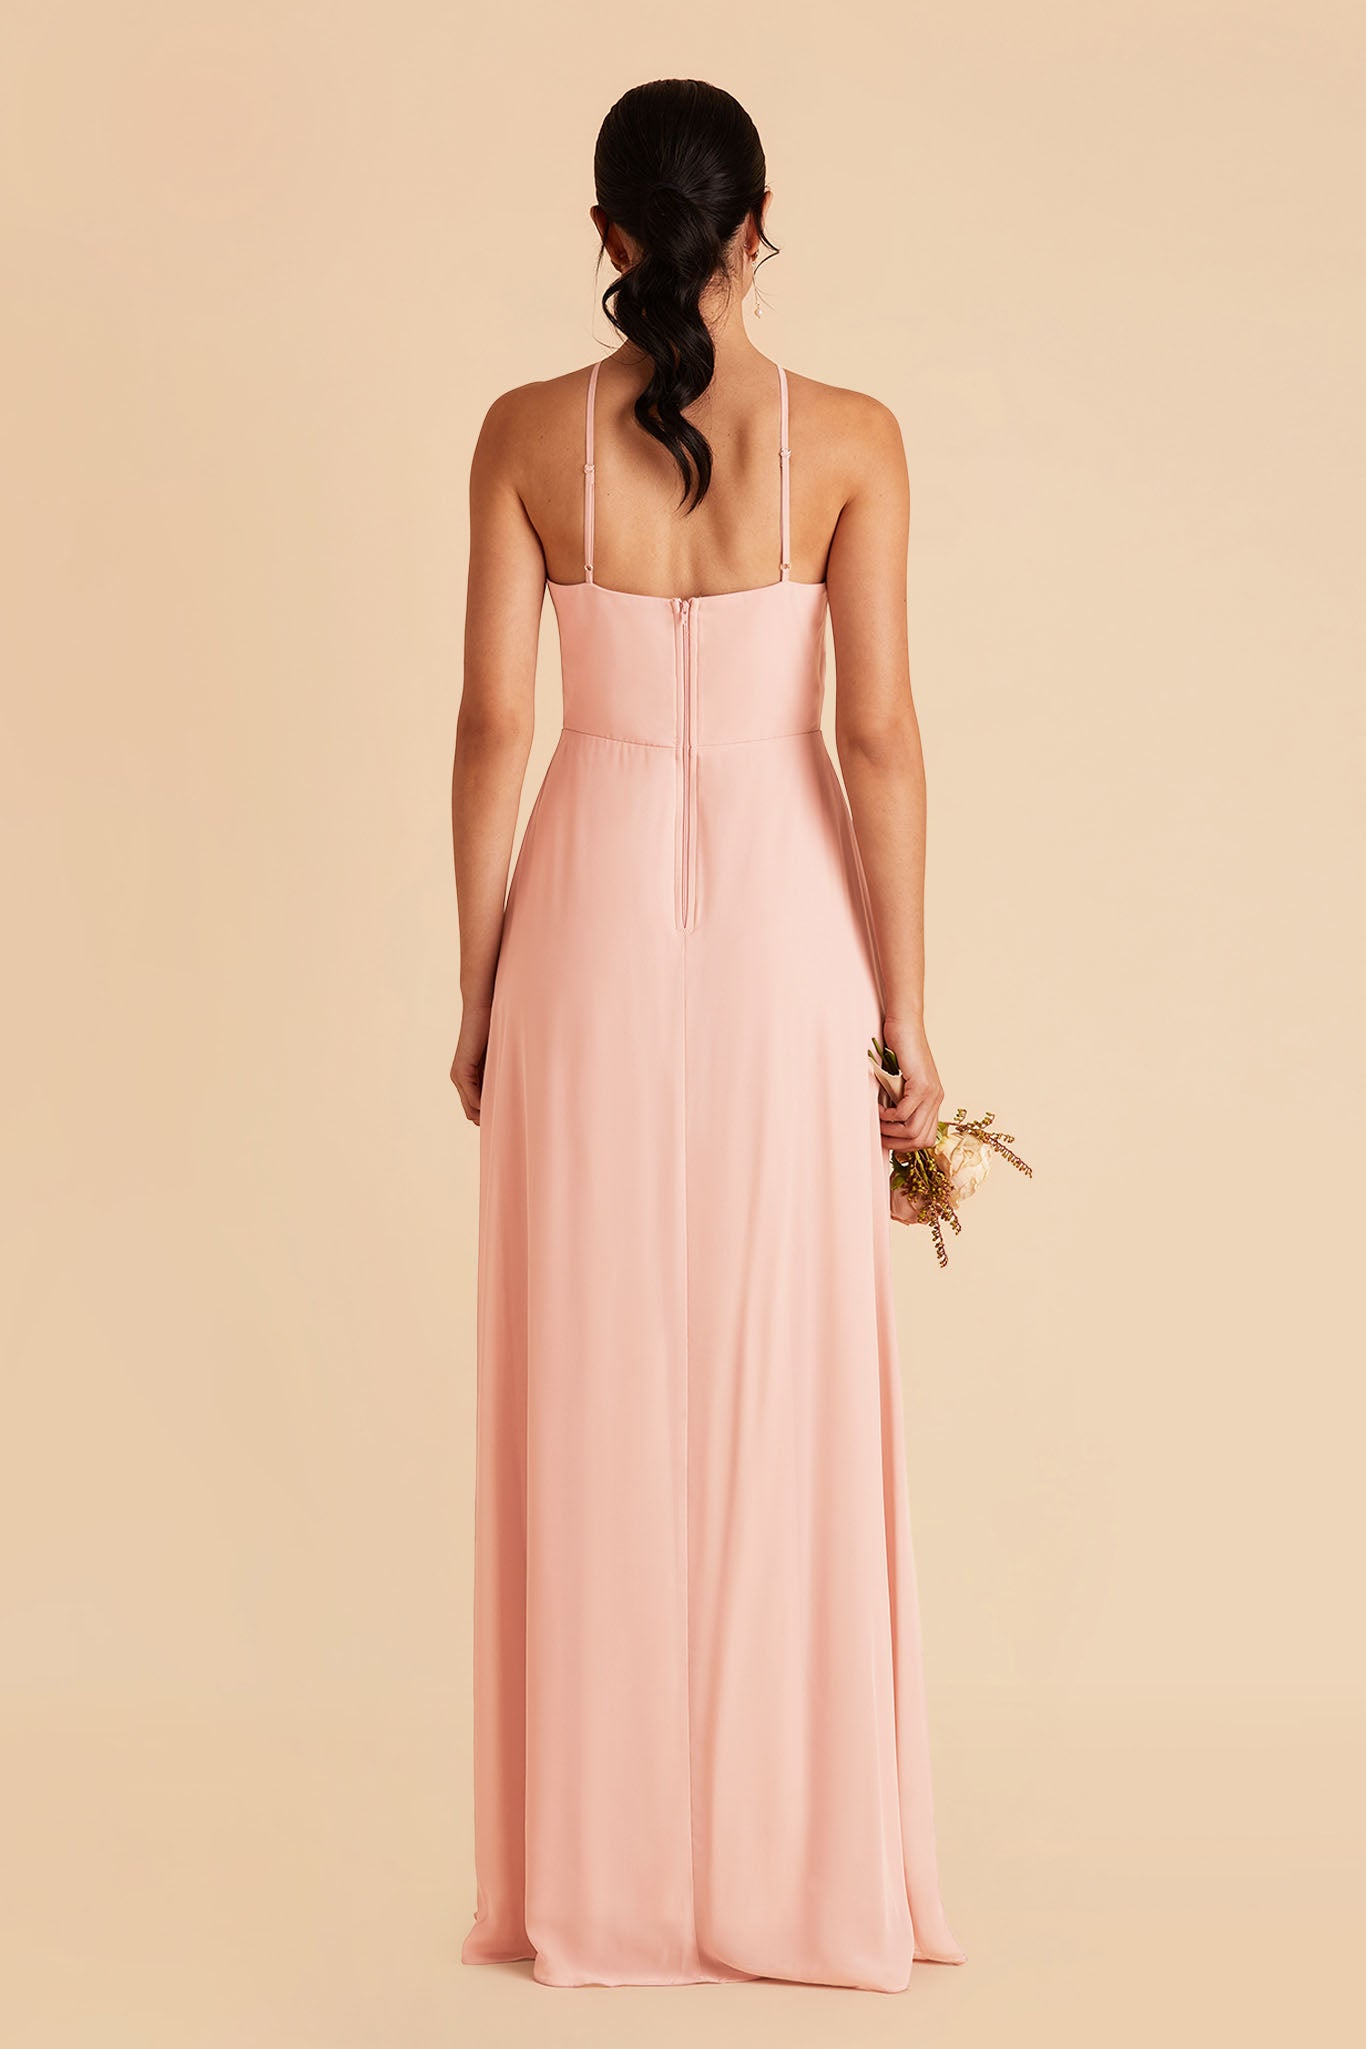 Blush Pink Juliet Chiffon Dress by Birdy Grey